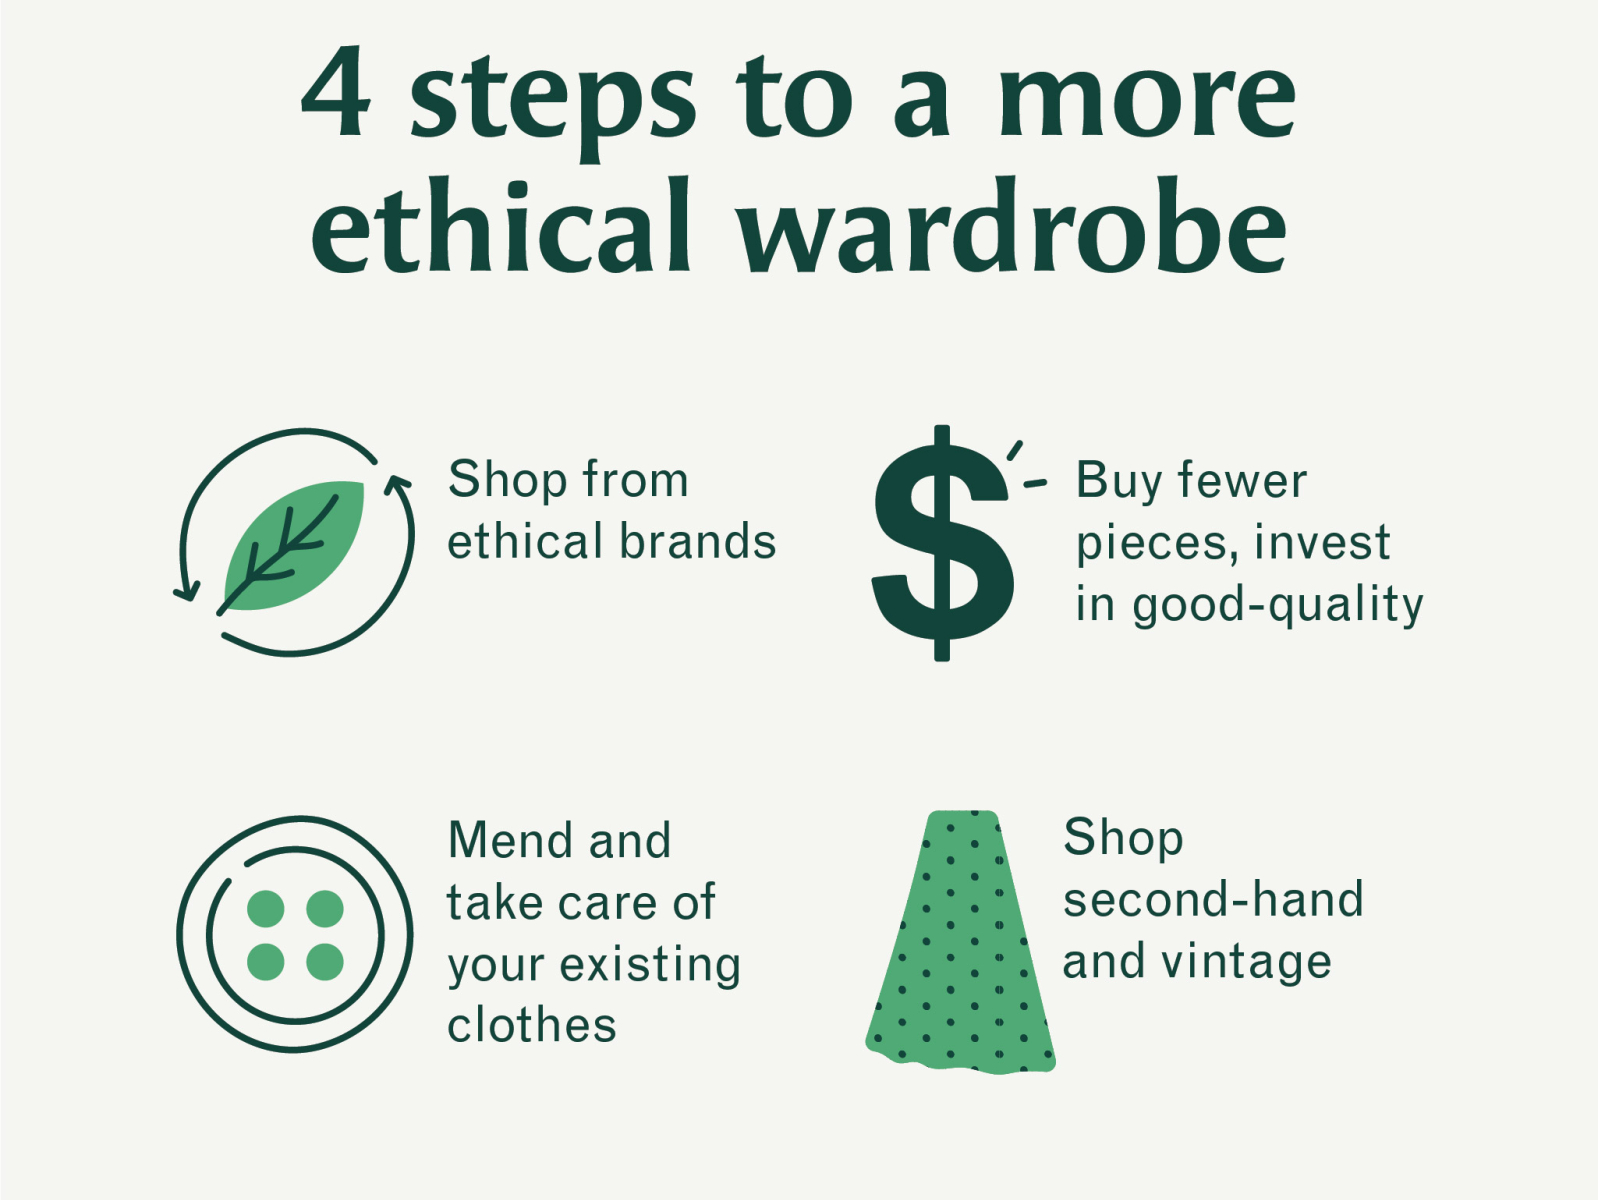 Ethical wardrobe icon set by Meghan MacTavish on Dribbble